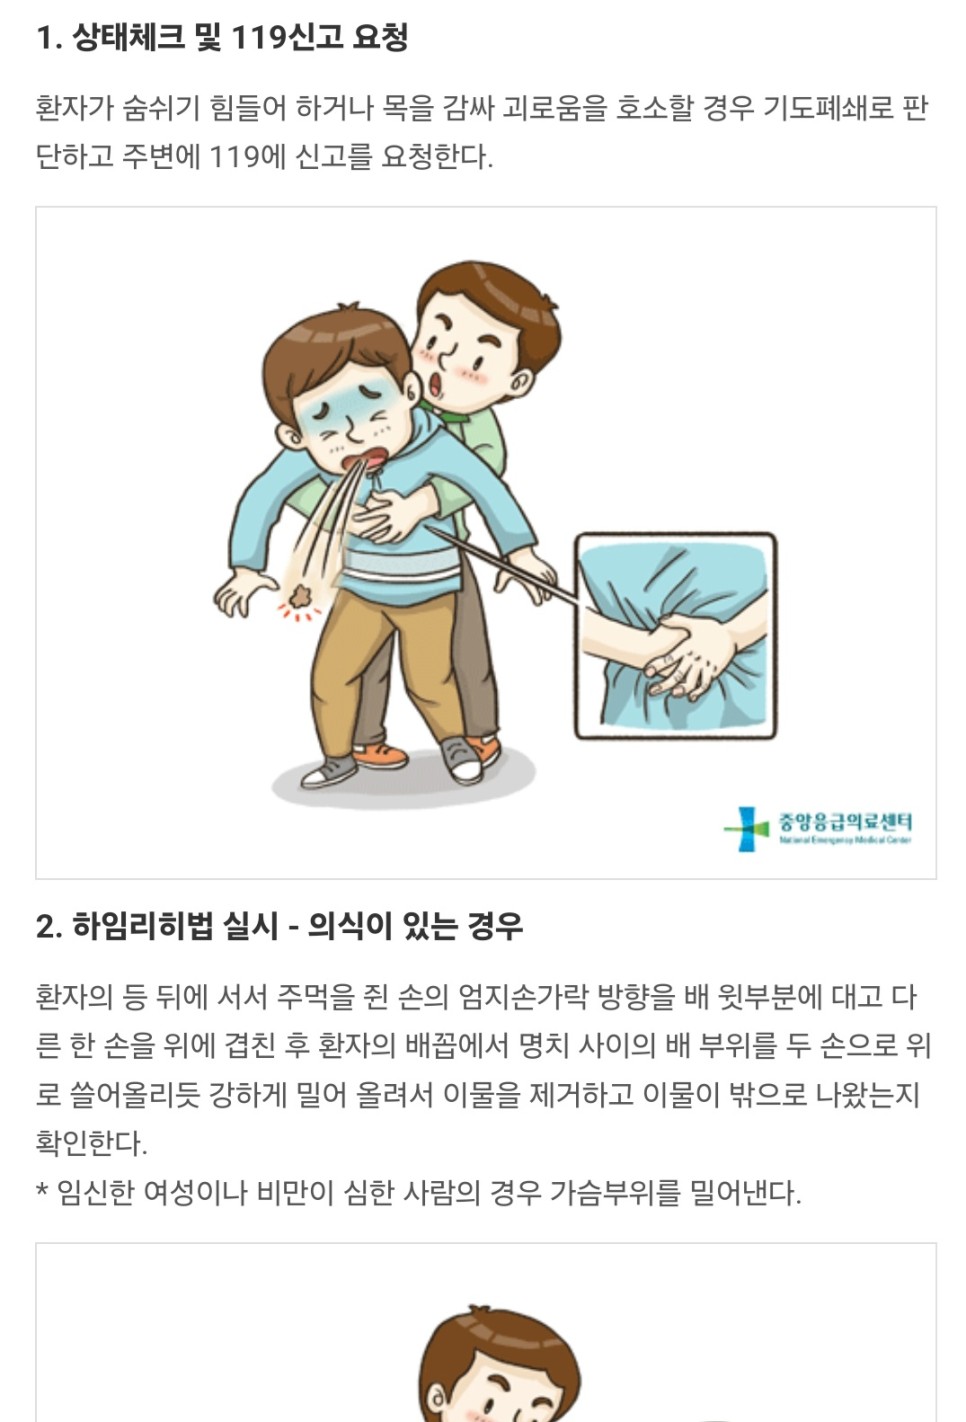 대전 병원, 약국, 자동심장충격기 정보는 카카오톡에서 빠르게 조회하세요